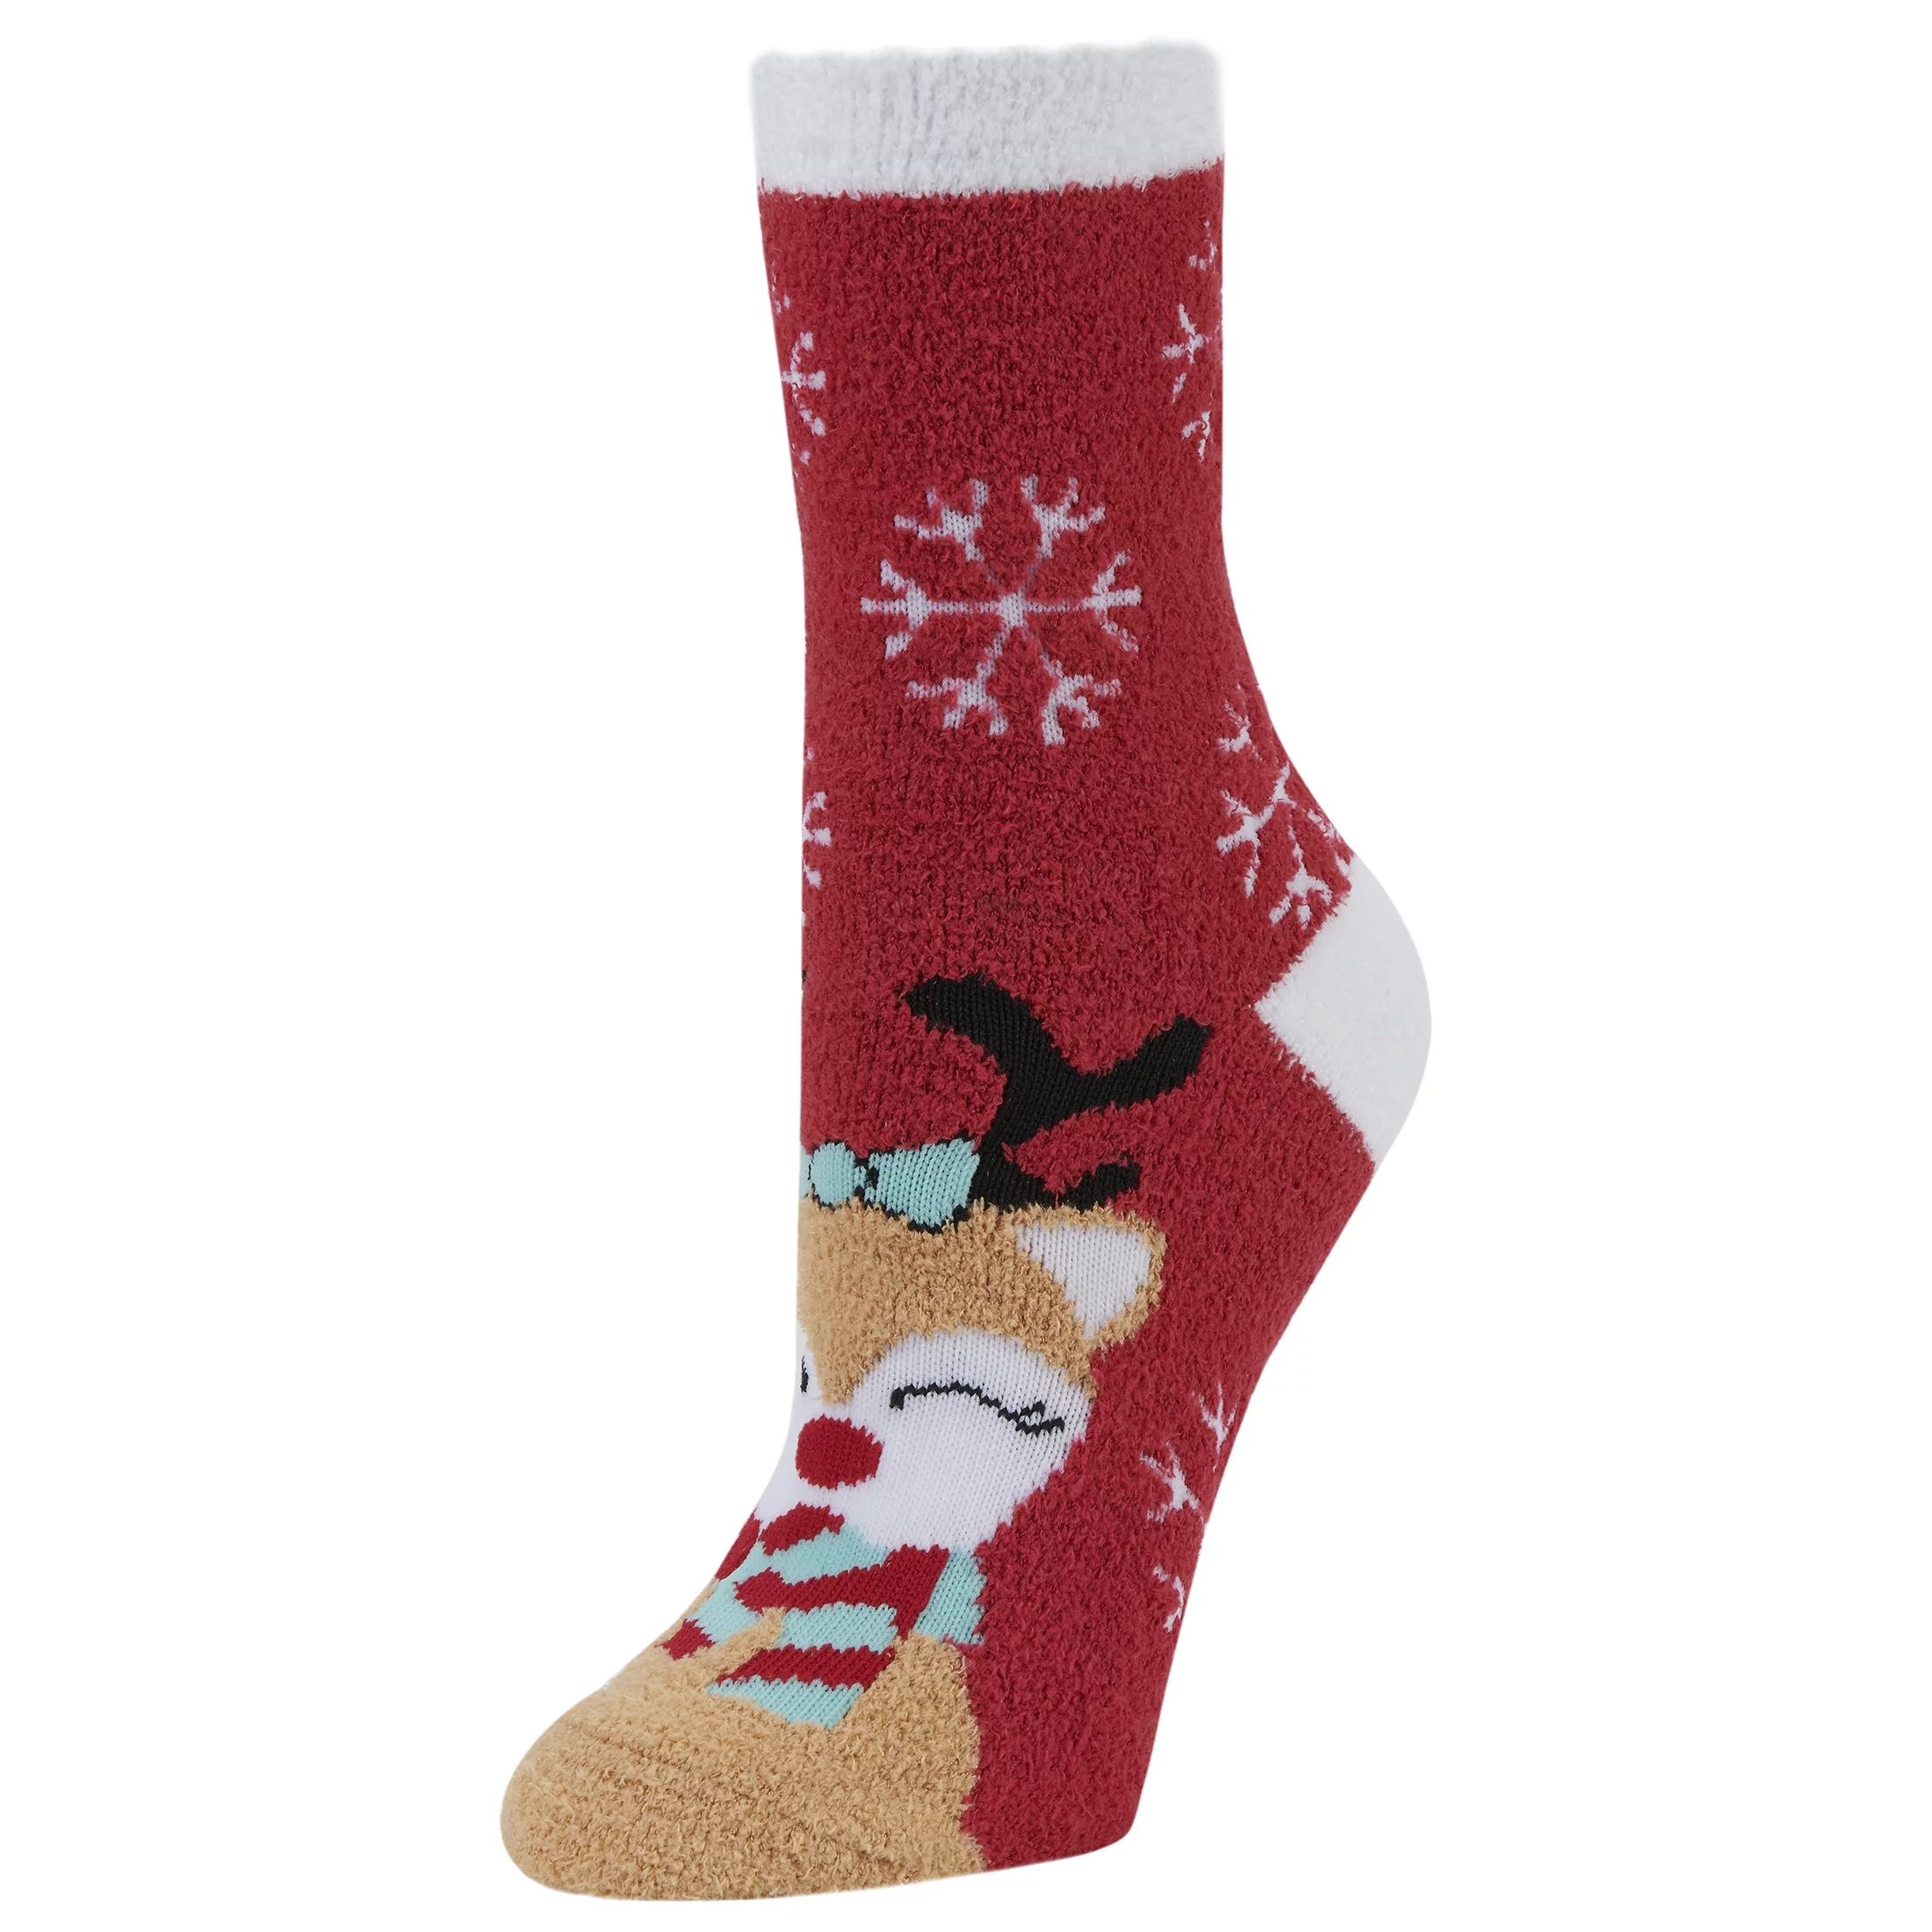 Airplus Holiday Aloe Infused Crew Socks, Red Deer, Women's Medium 1 Pair, Size 5-10 - Walmart.com | Walmart (US)